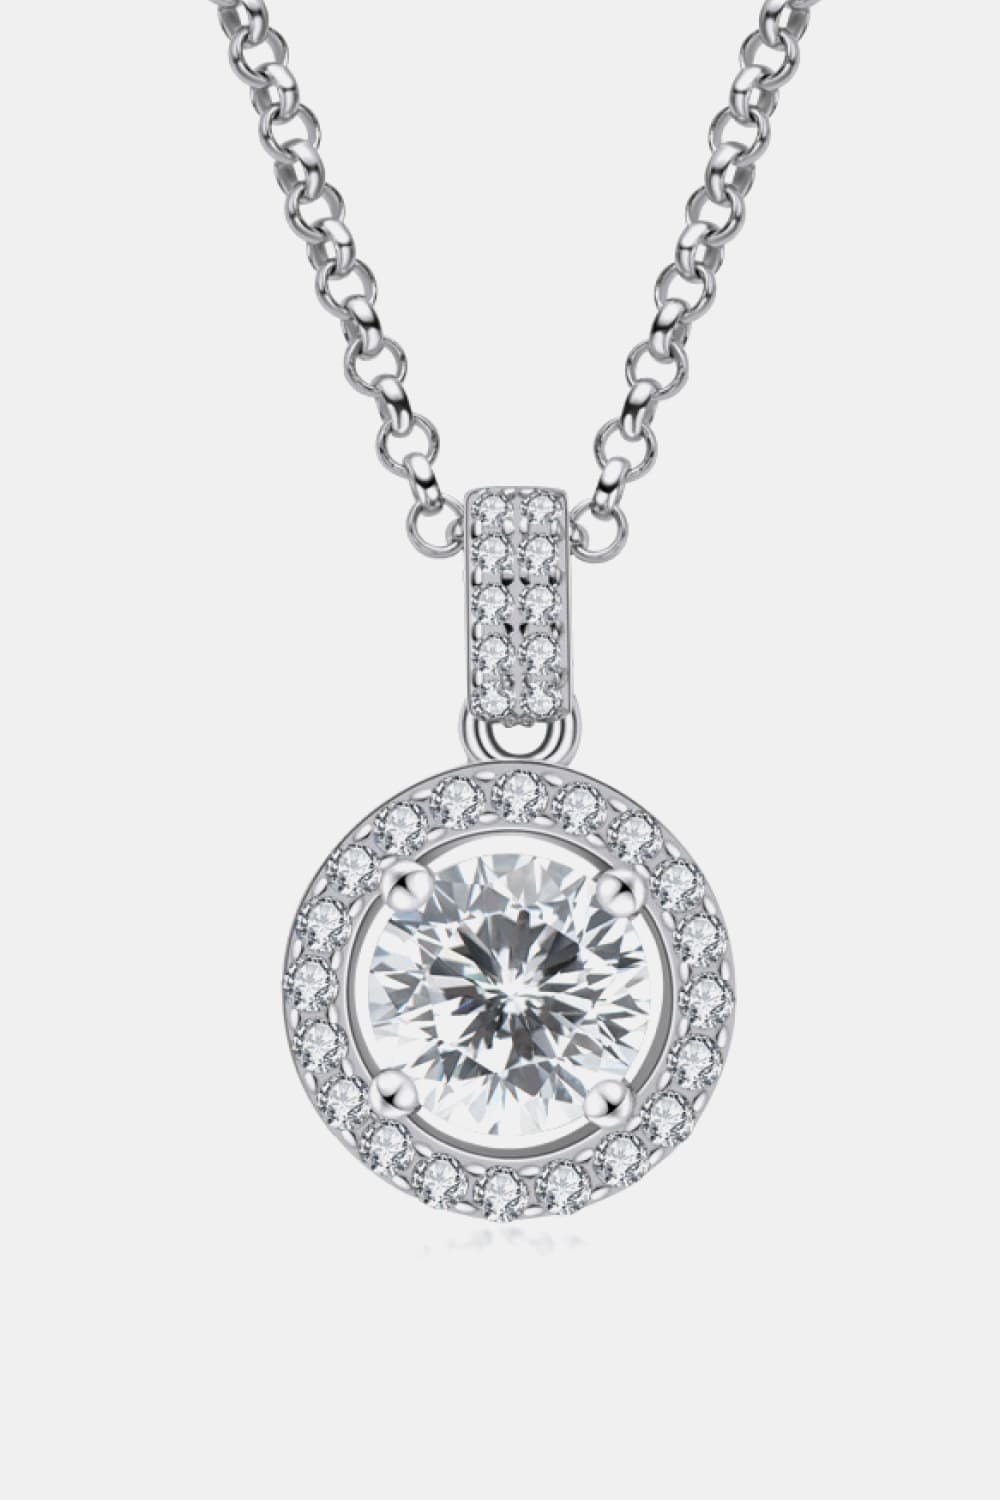 Zircon Pendant 925 Sterling Silver Necklace - Nicole Lee Apparel